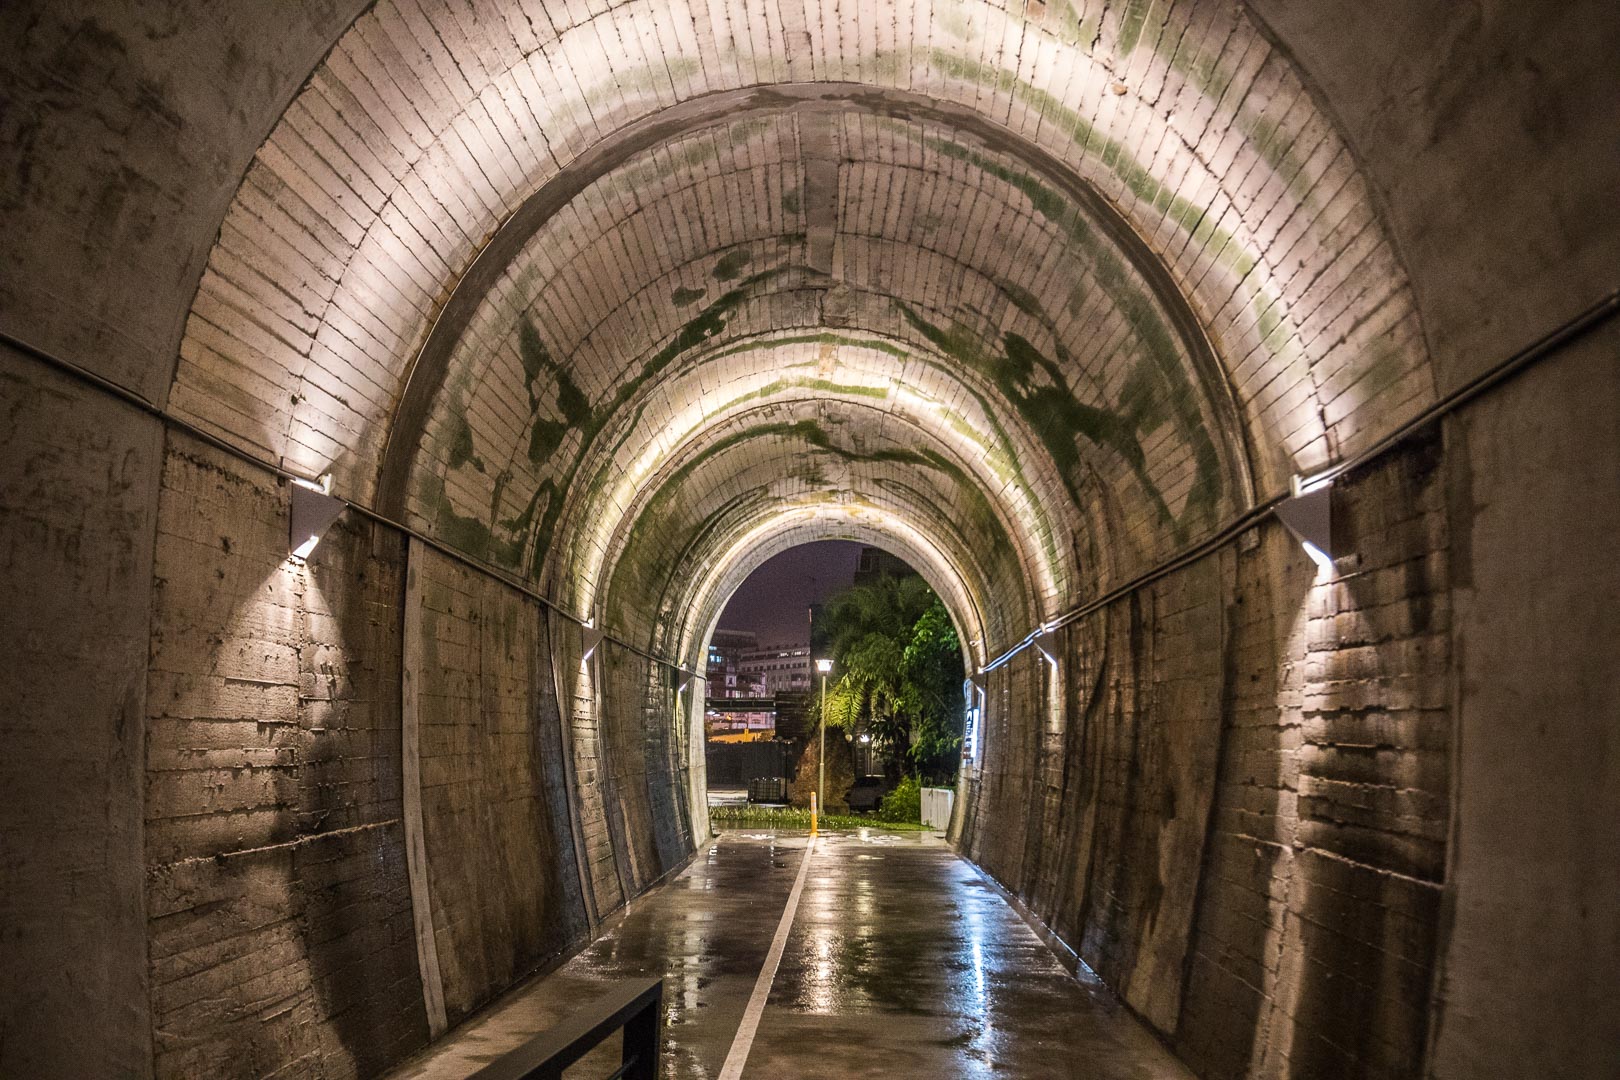 宜蘭3D海底彩繪隧道,宜蘭景點,蘇澳景點,蘇東隧道3D海底彩繪隧道,蘇東隧道,3D海底彩繪隧道,宜蘭蘇東隧道3